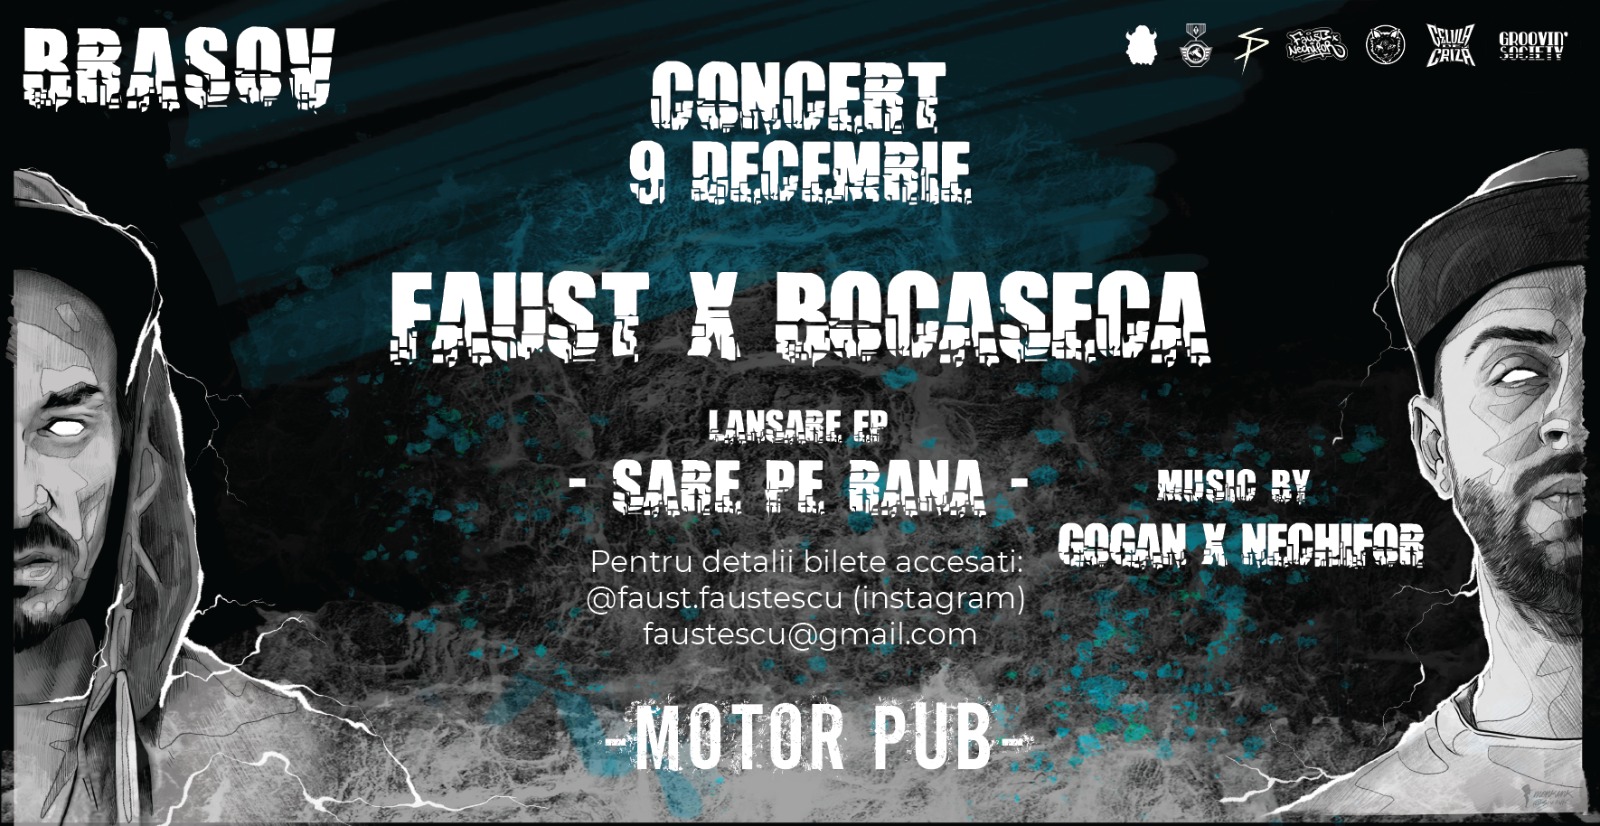 Faust x Bocaseca || Concert „Sare pe rană” || 9 DEC Brasov